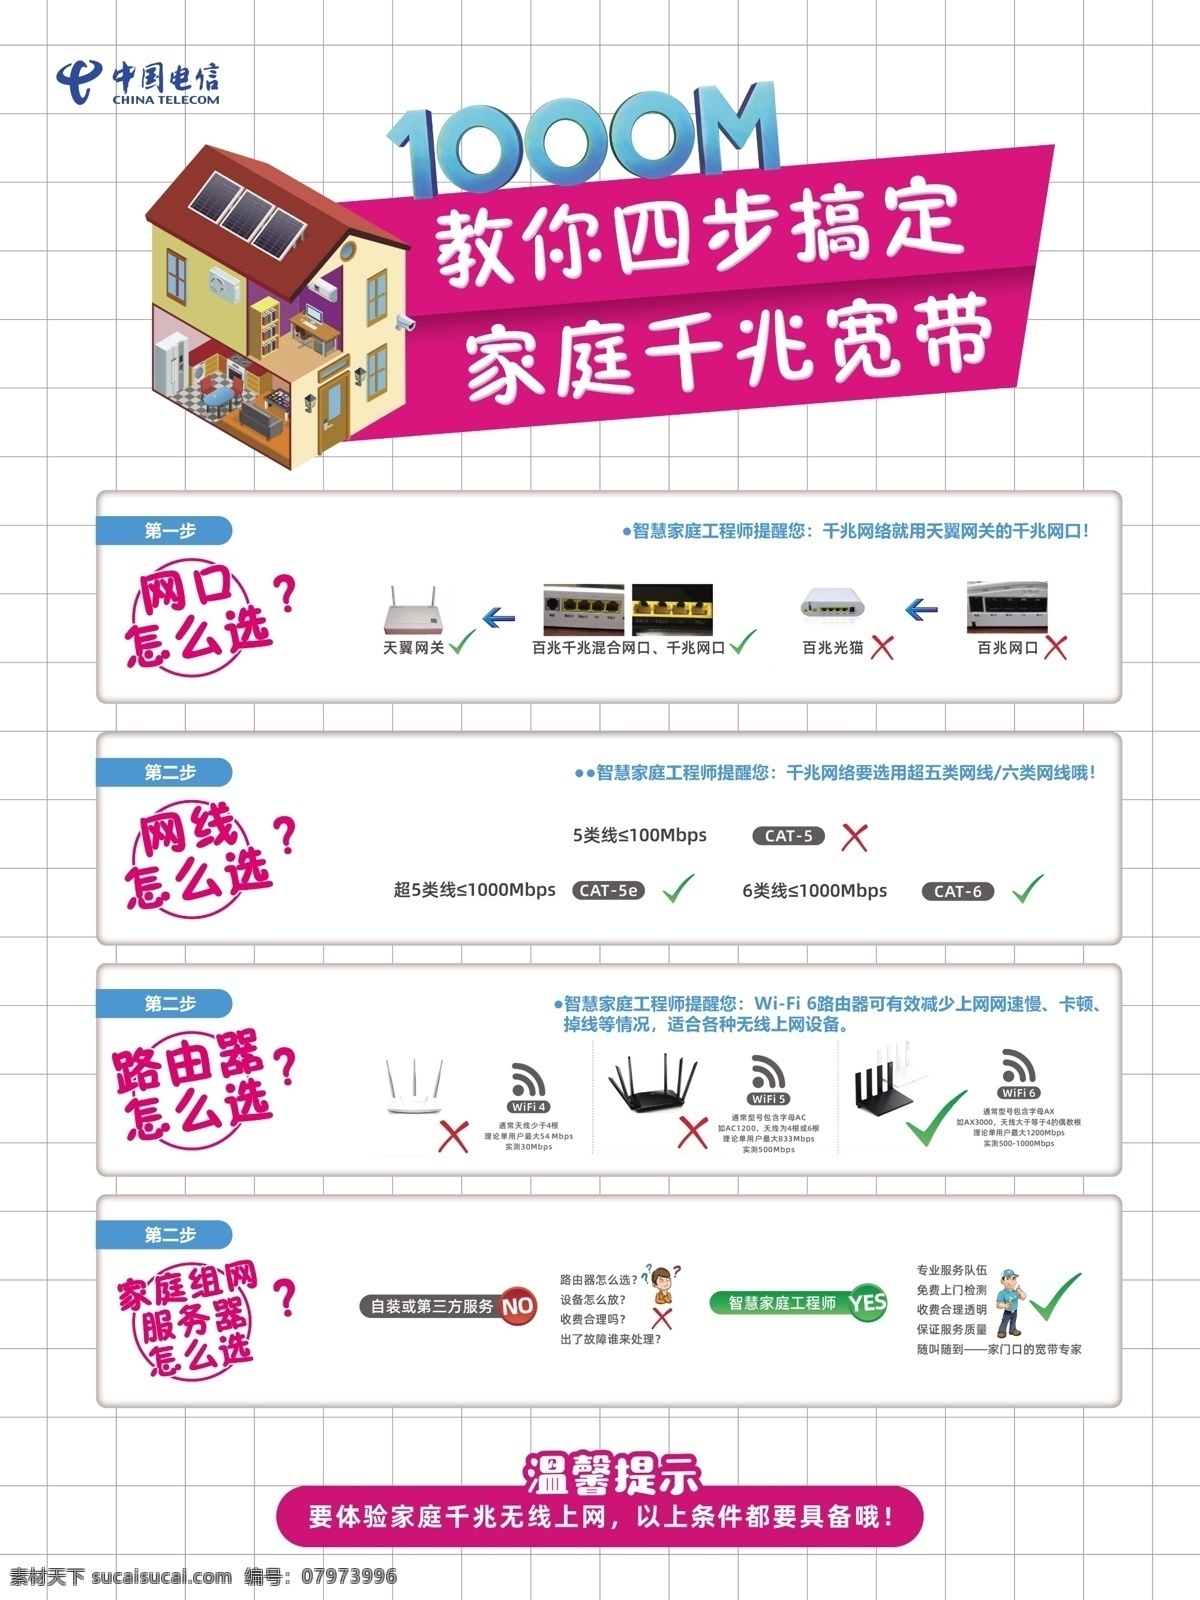 中国电信图片 中国电信 光猫 路由器 宽带 房子 电信天翼